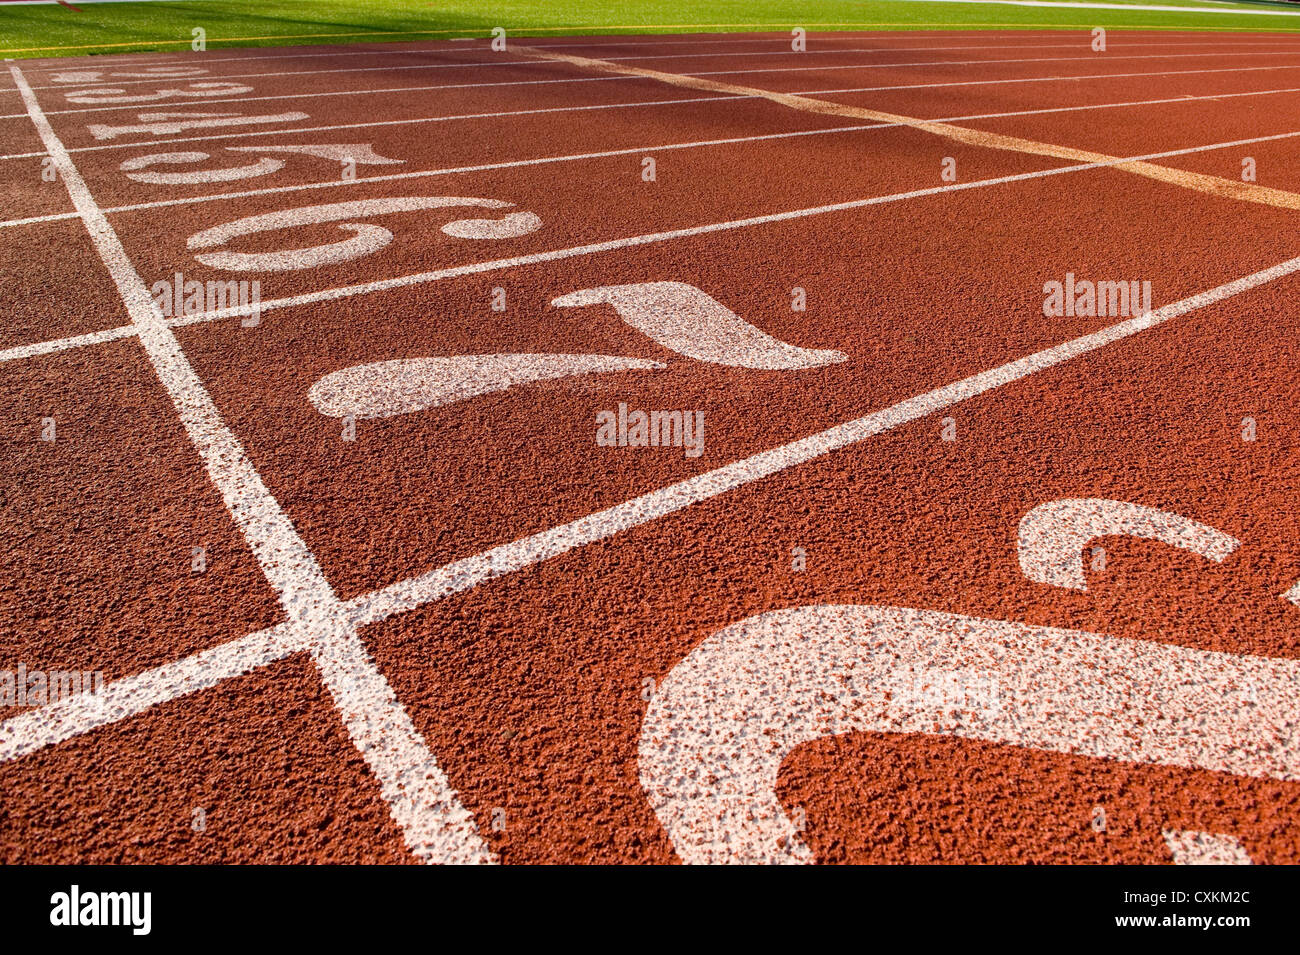 L'exécutant lane marqueurs sur une piste de course de la création d'un track and field background Banque D'Images